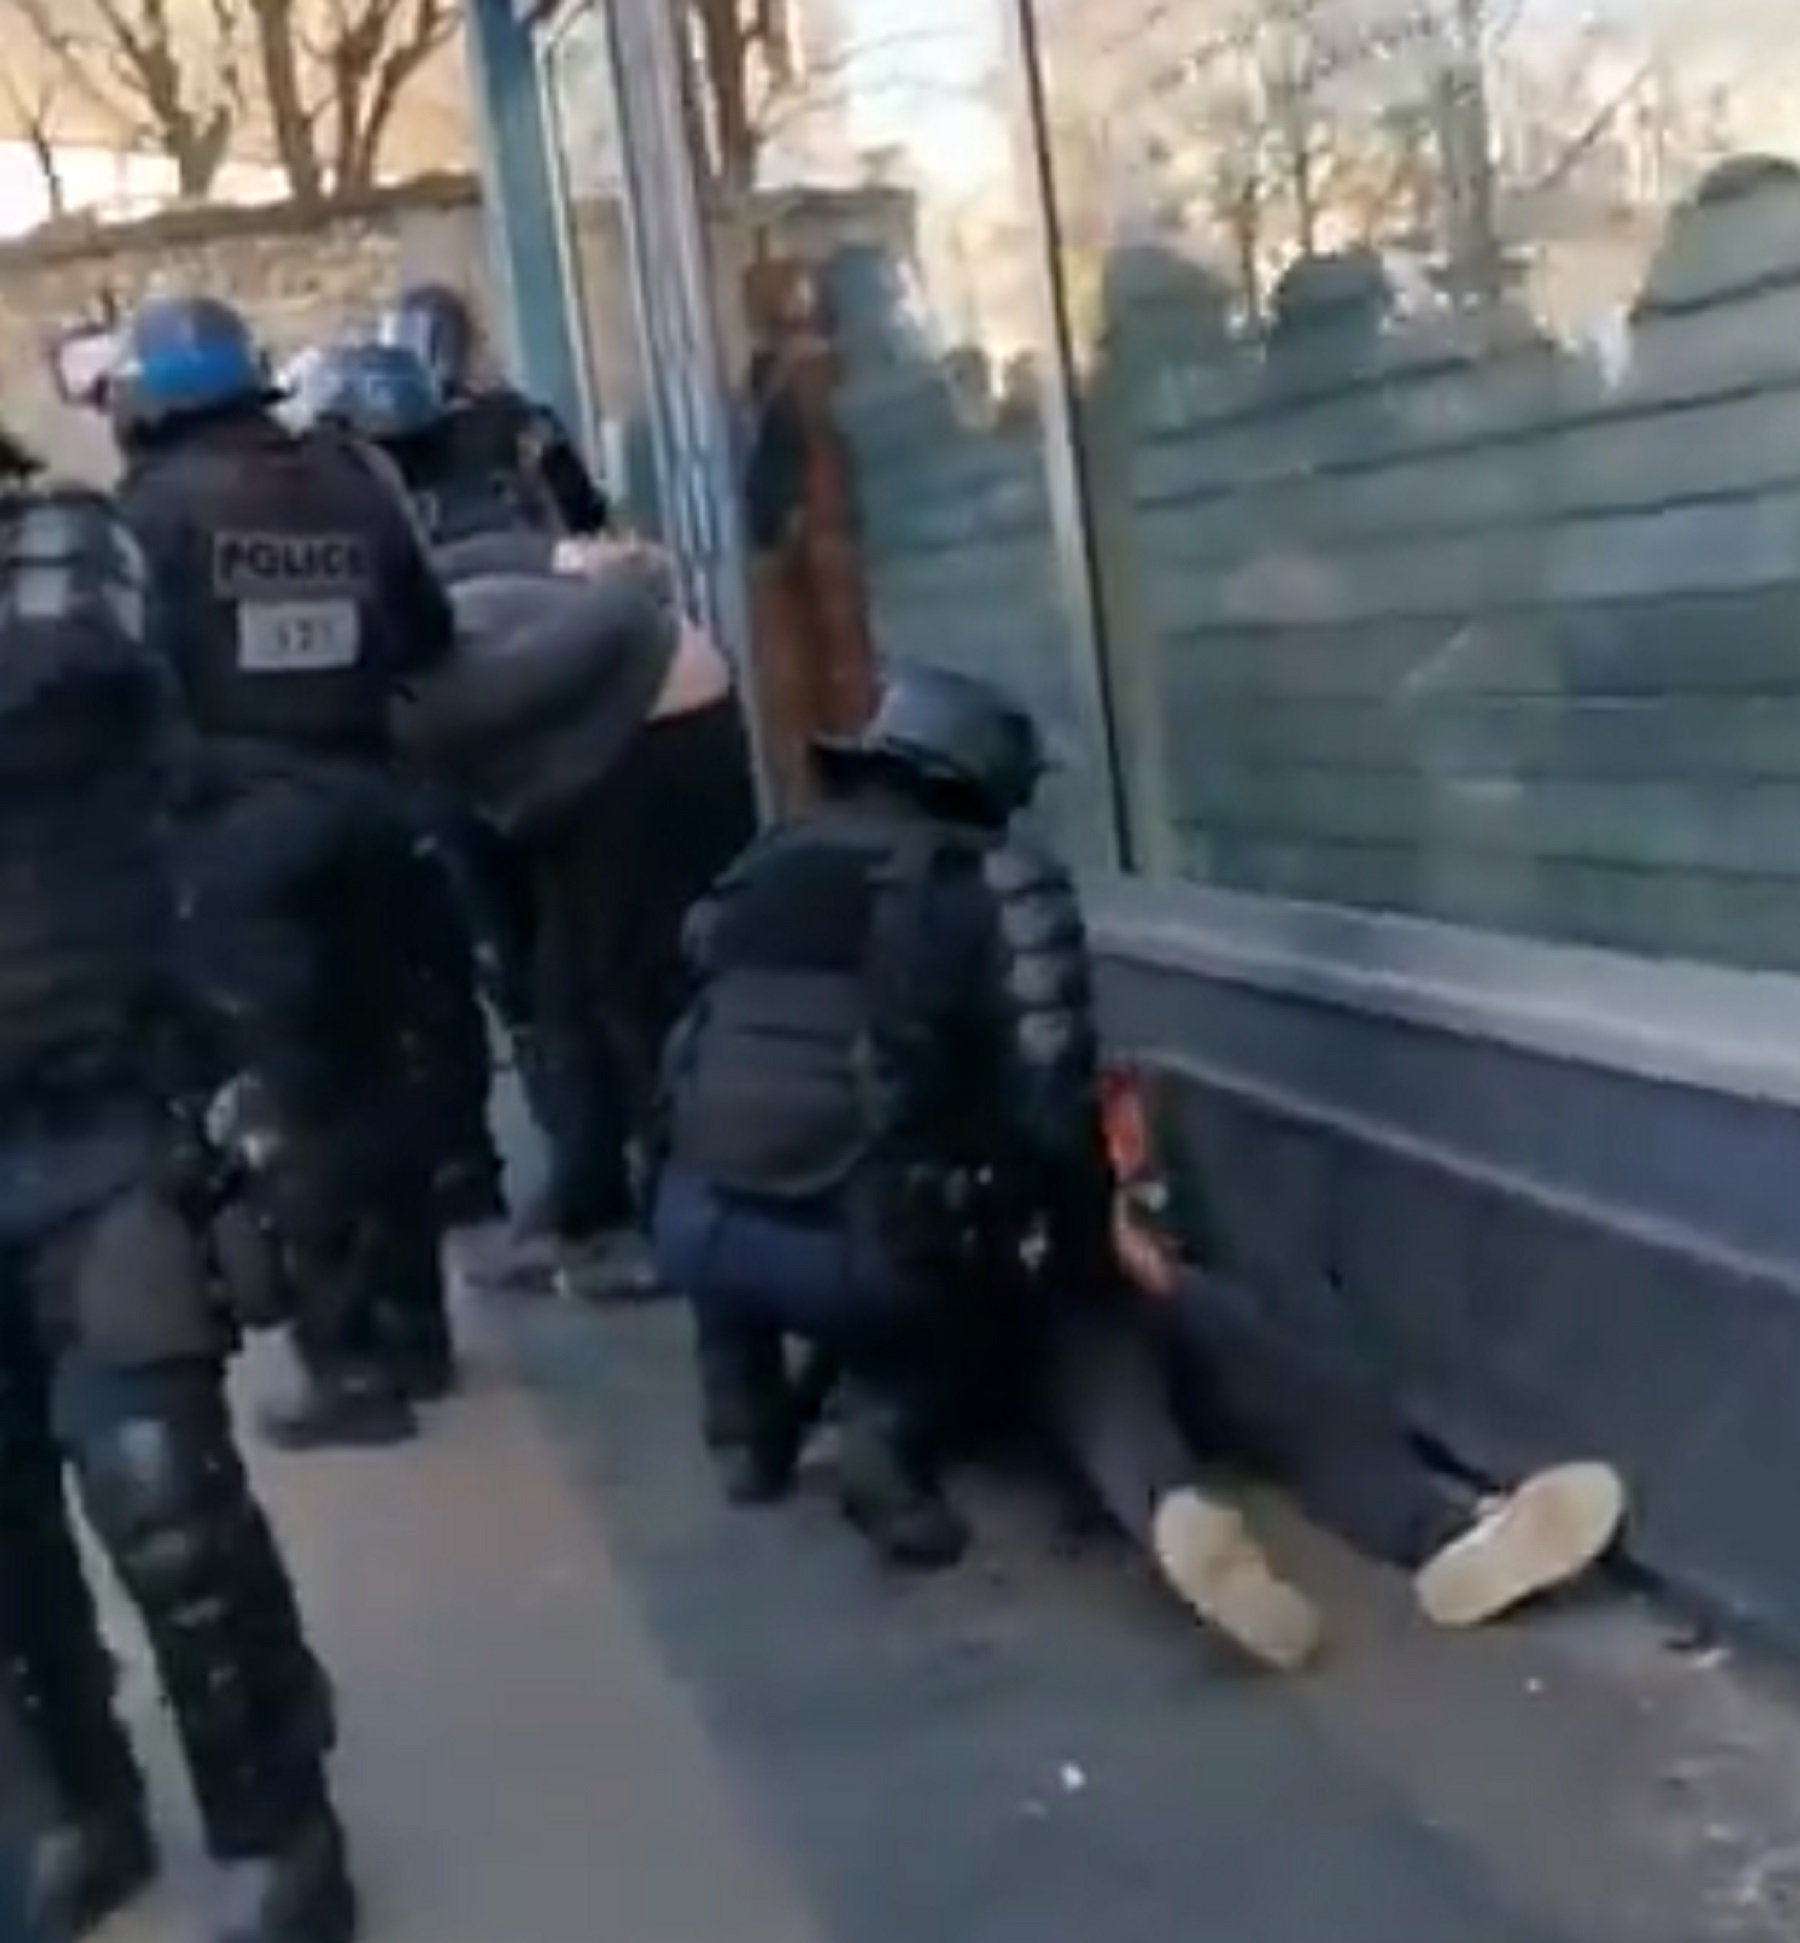 A França sí: obren una investigació a la policia per colpejar un jove a terra